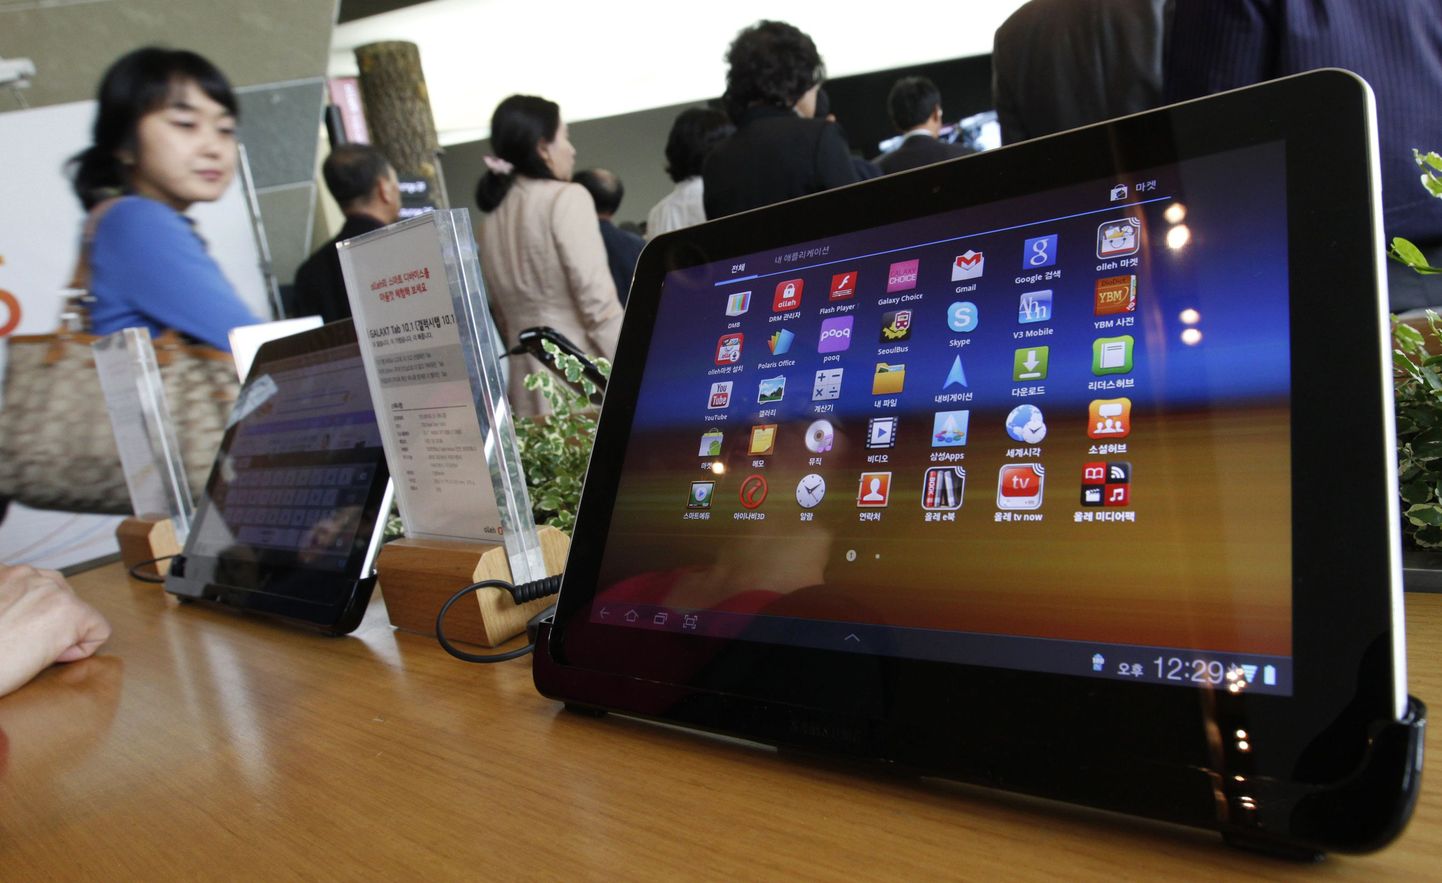 Üks patendivaidlusi tekitanud Samsungi toode - Galaxy Tab 10.1.